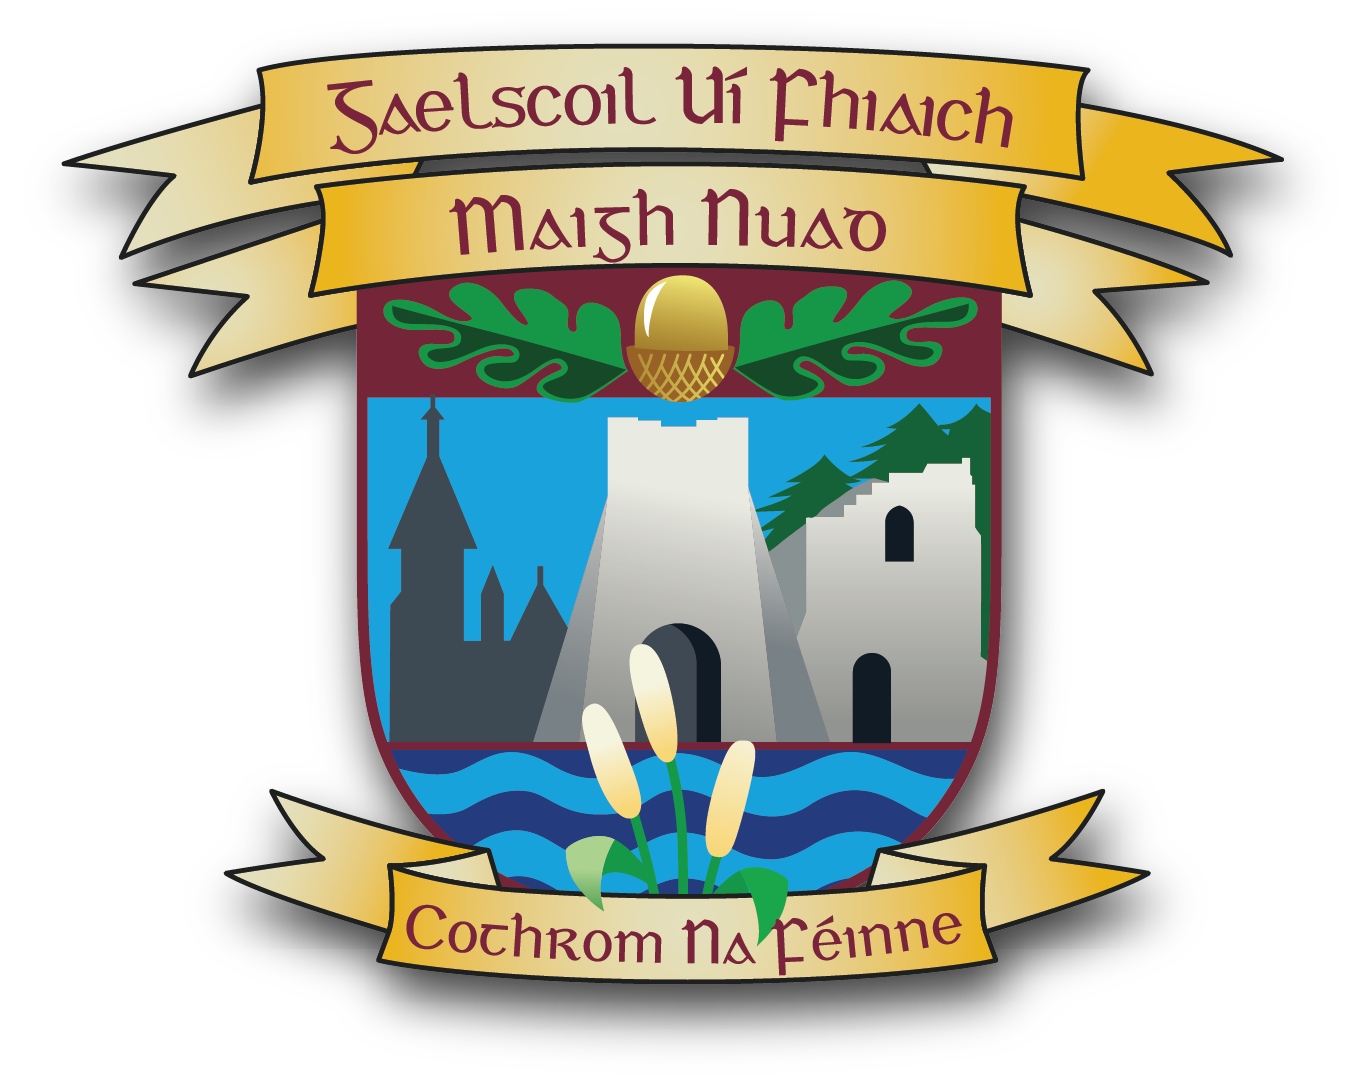 Gaelscoil Uí Fhiaich